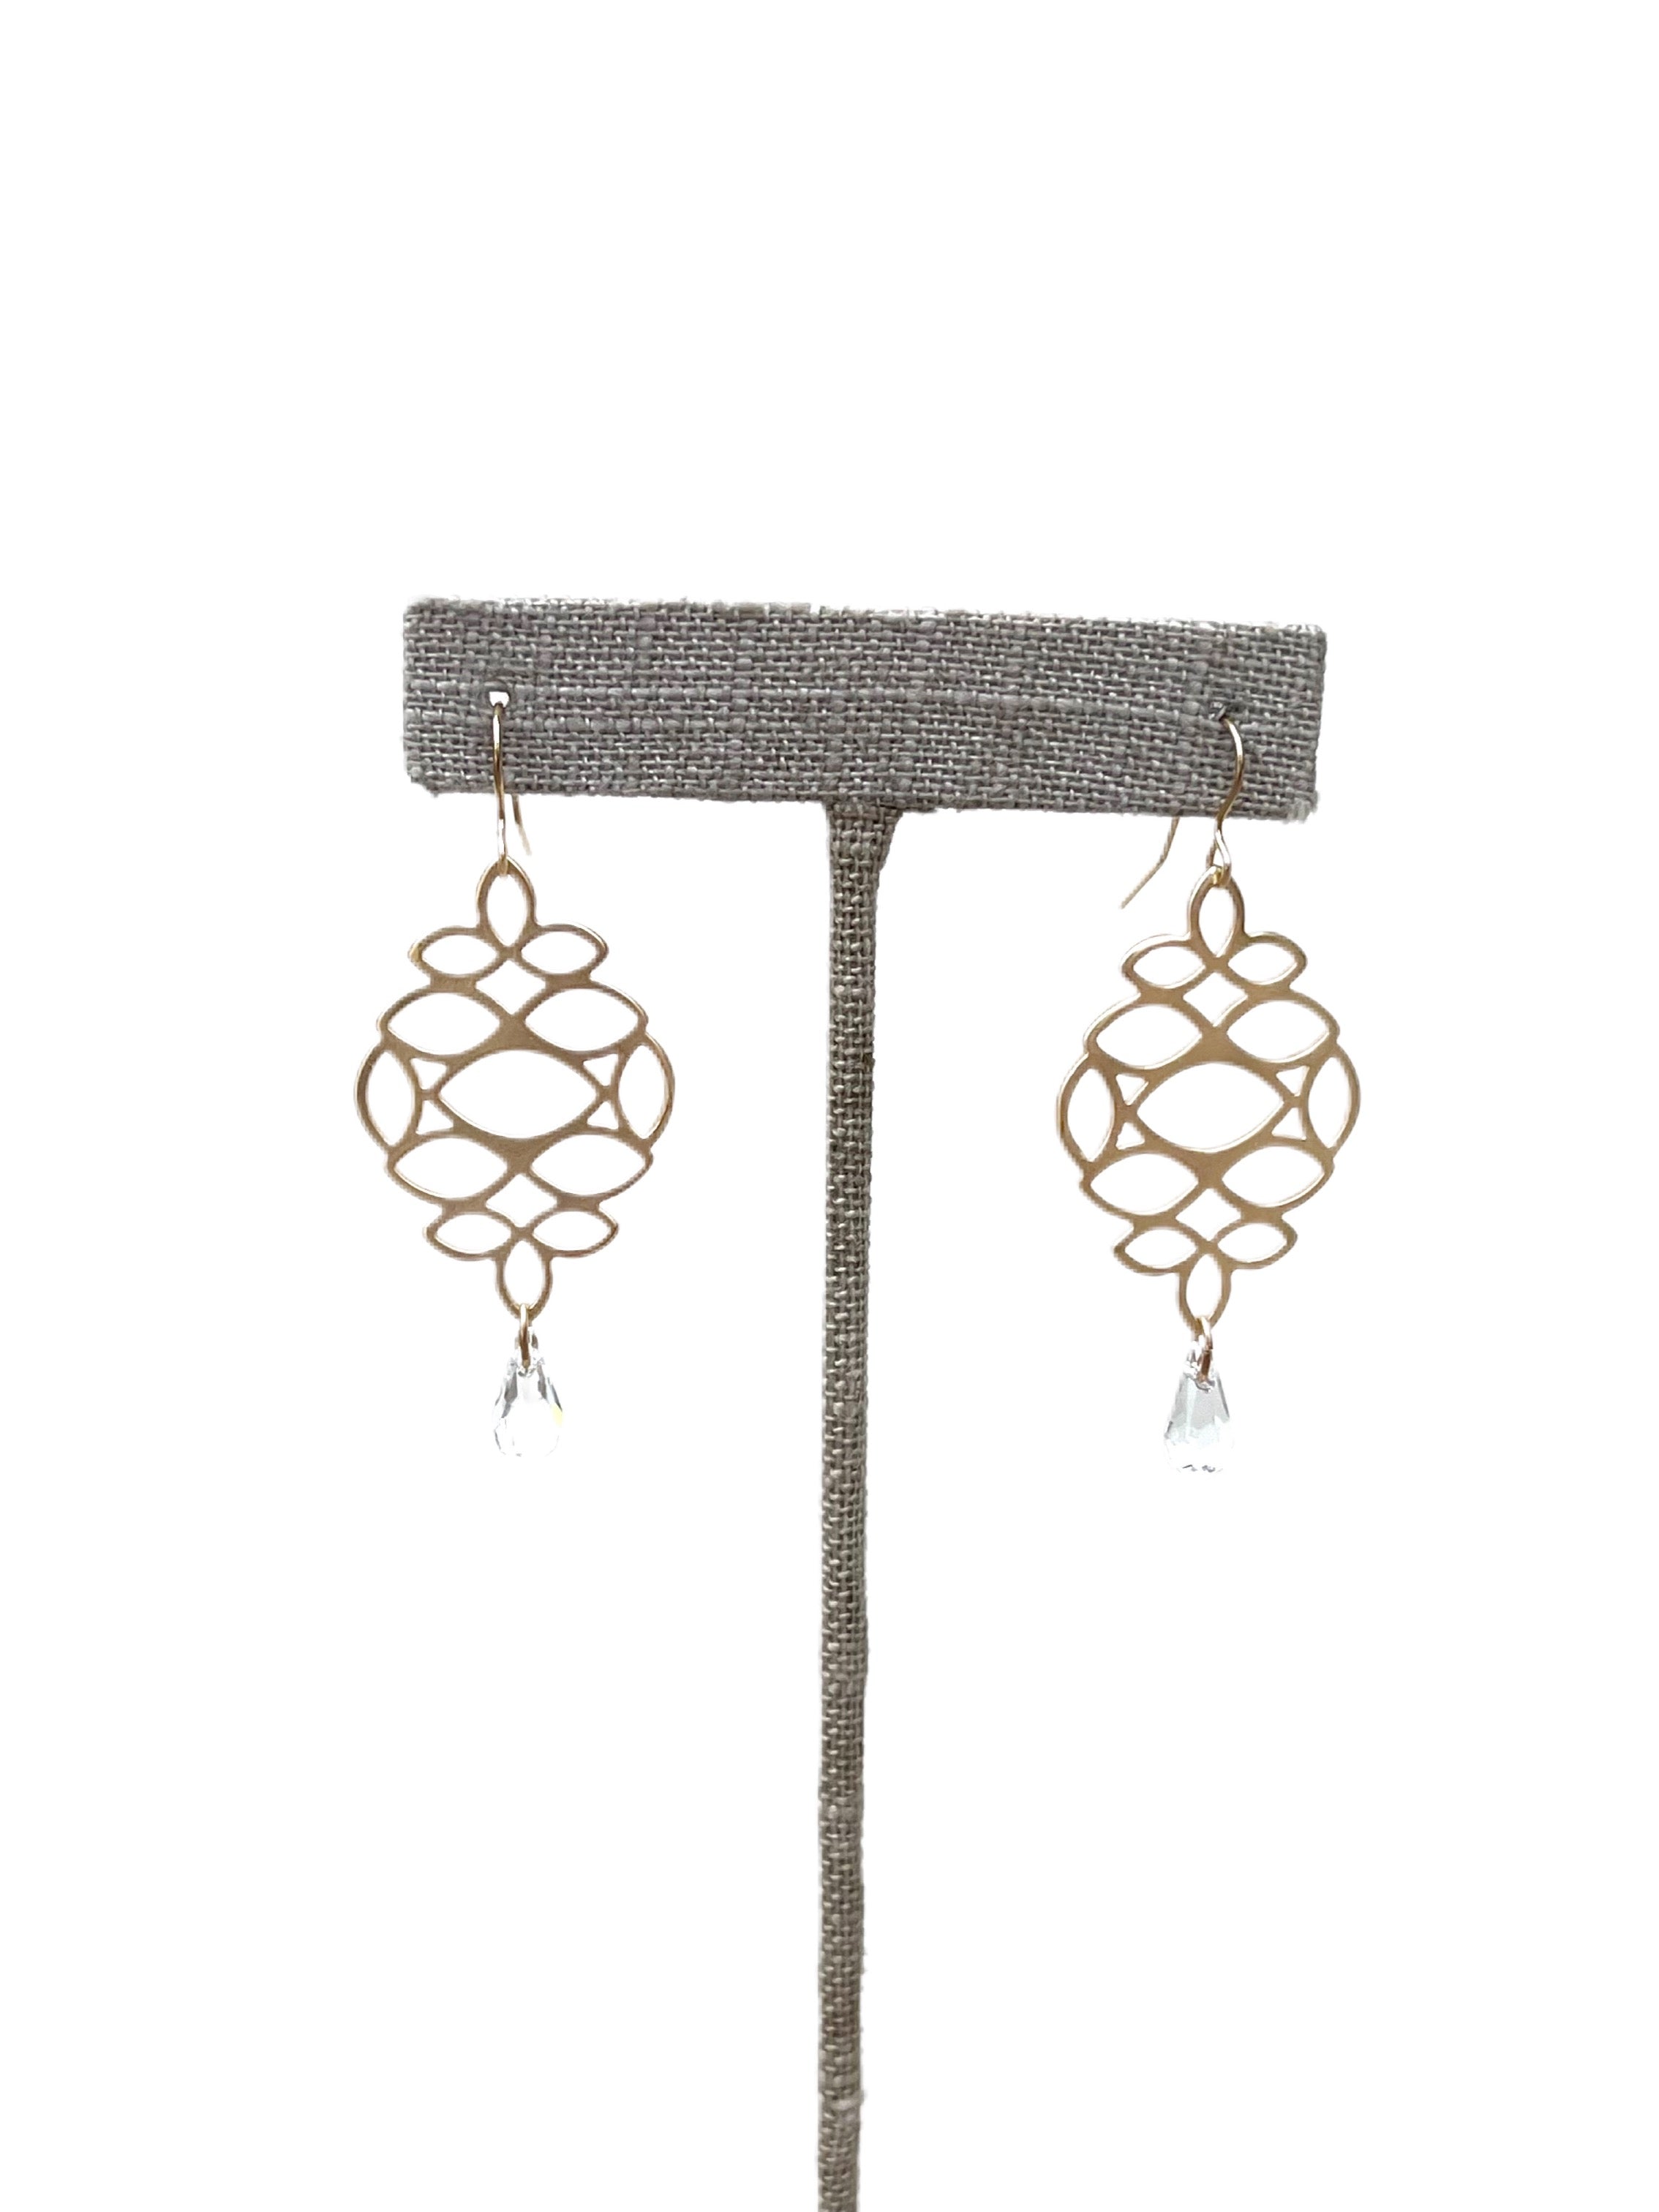 Ivy - earrings with Swarovski crystal drop